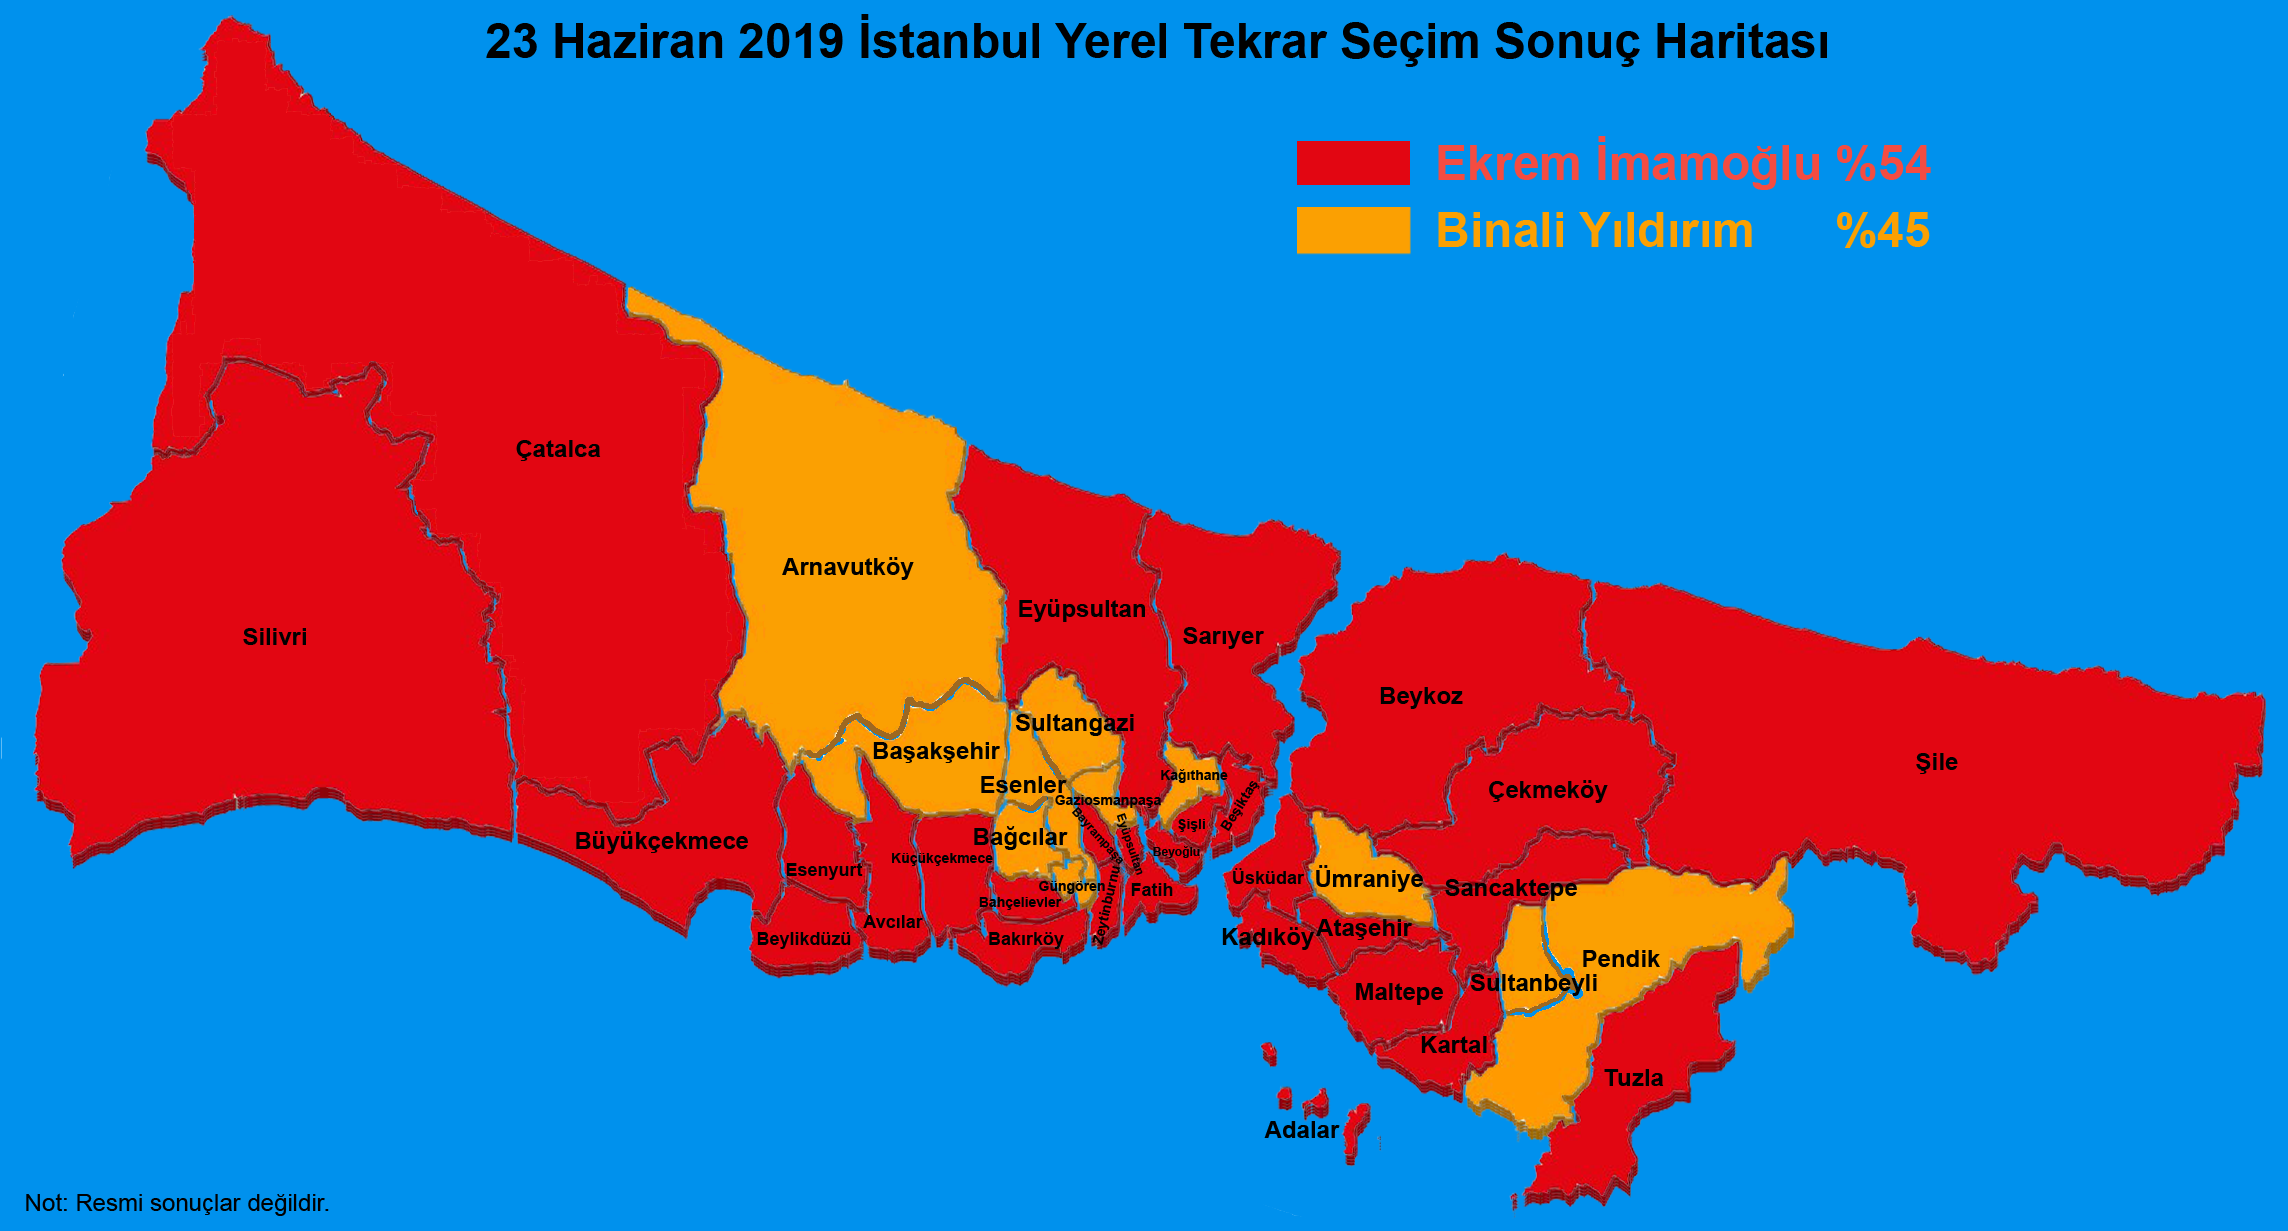 23 Haziran 2019 İstanbul Yerel Tekrar Seçim Sonuç Haritası - partilerin ilçelere dağılımı